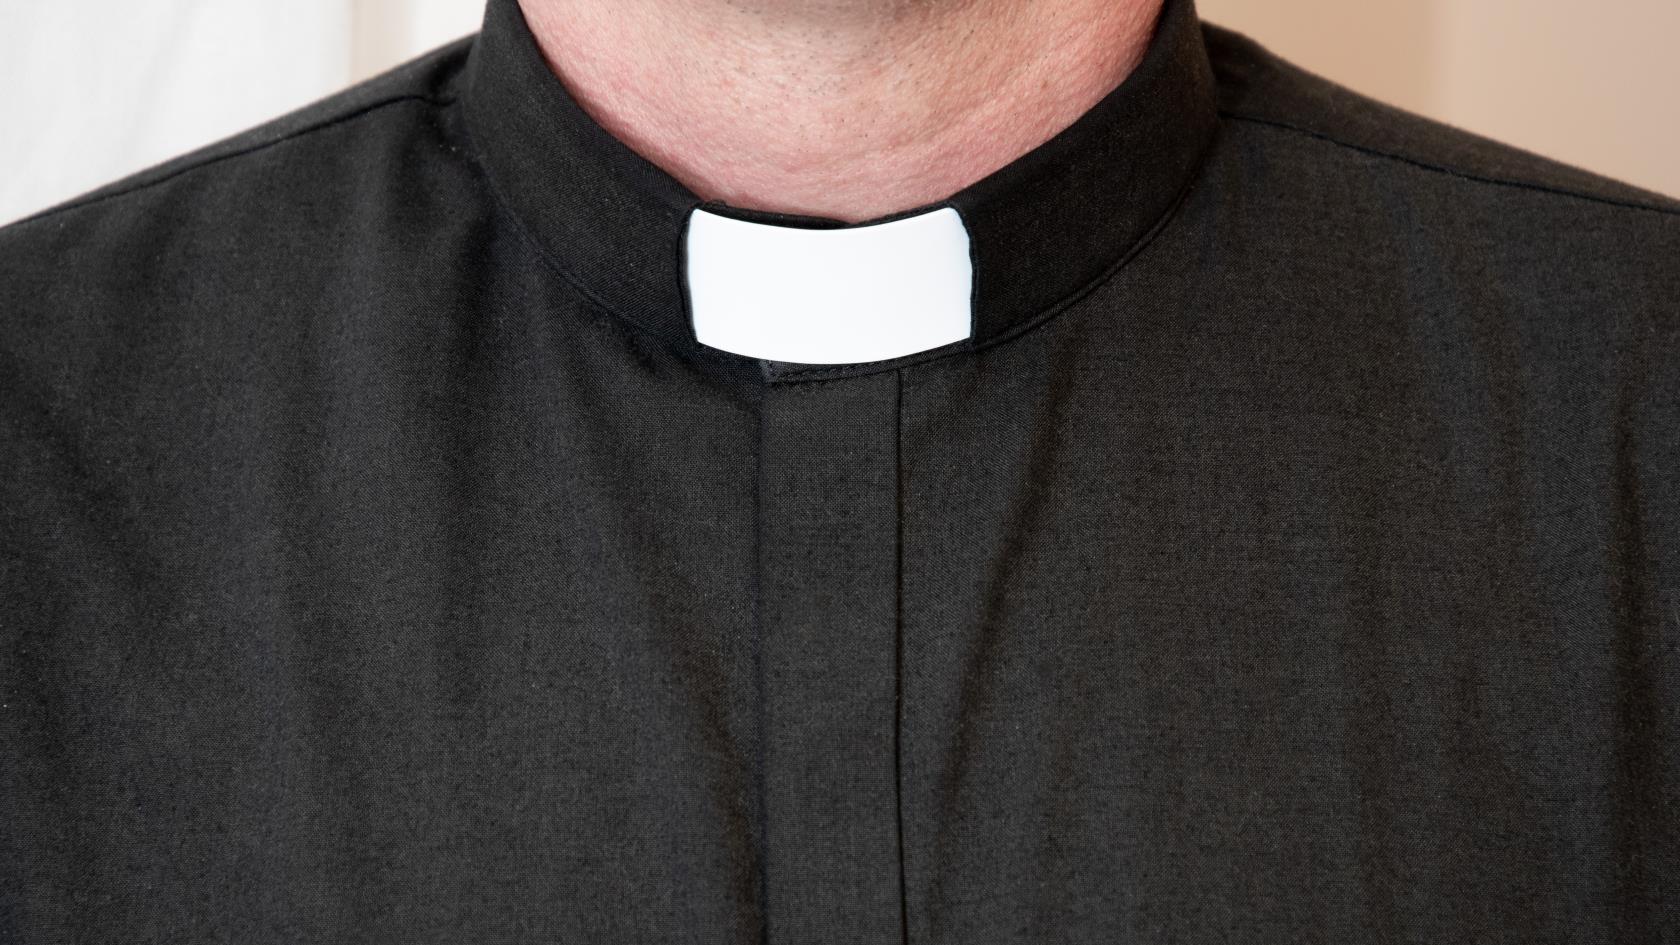 En svart prästskjorta.